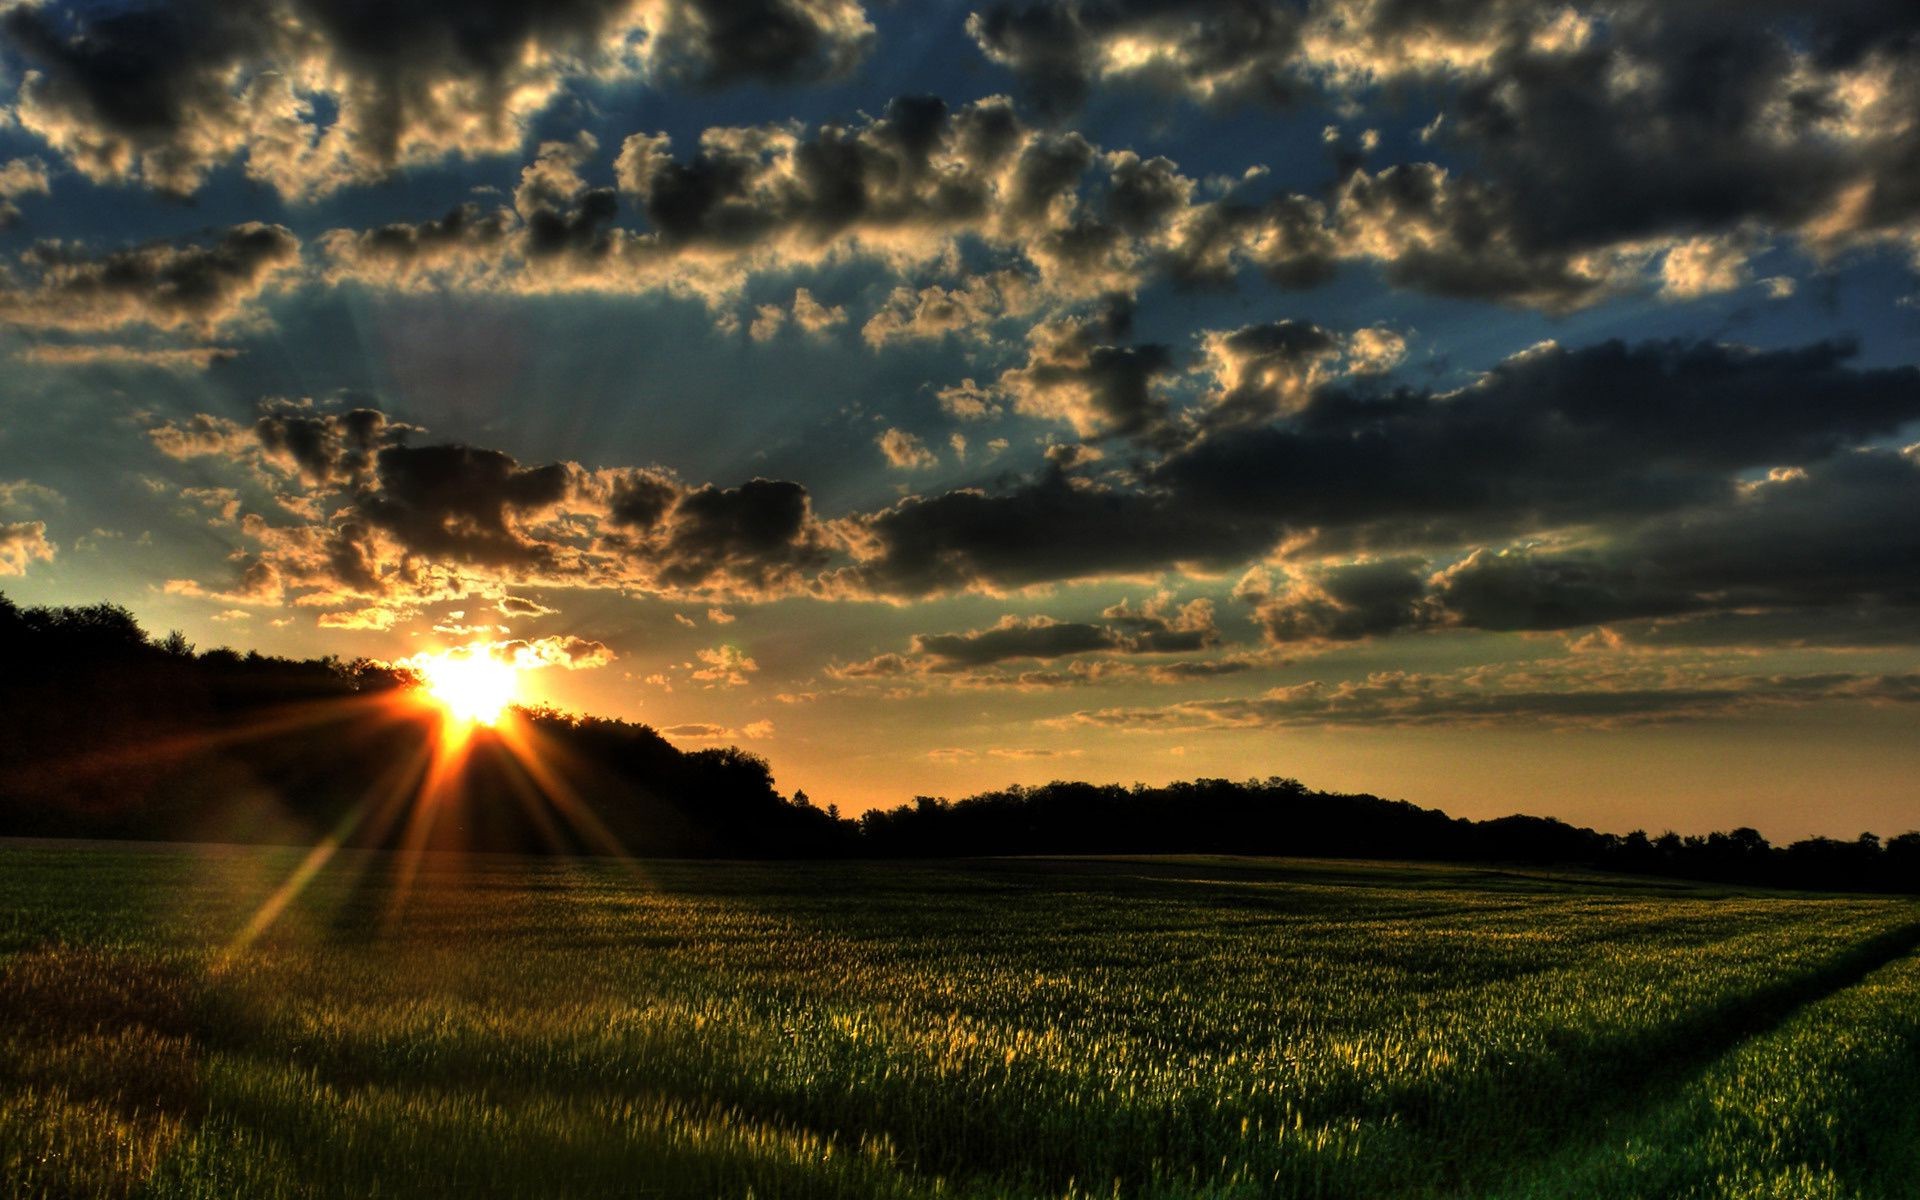 поля луга и долины закат солнце рассвет пейзаж природа небо сельских поле хорошую погоду сельской местности трава сельское хозяйство пшеницы ферма облако вечером